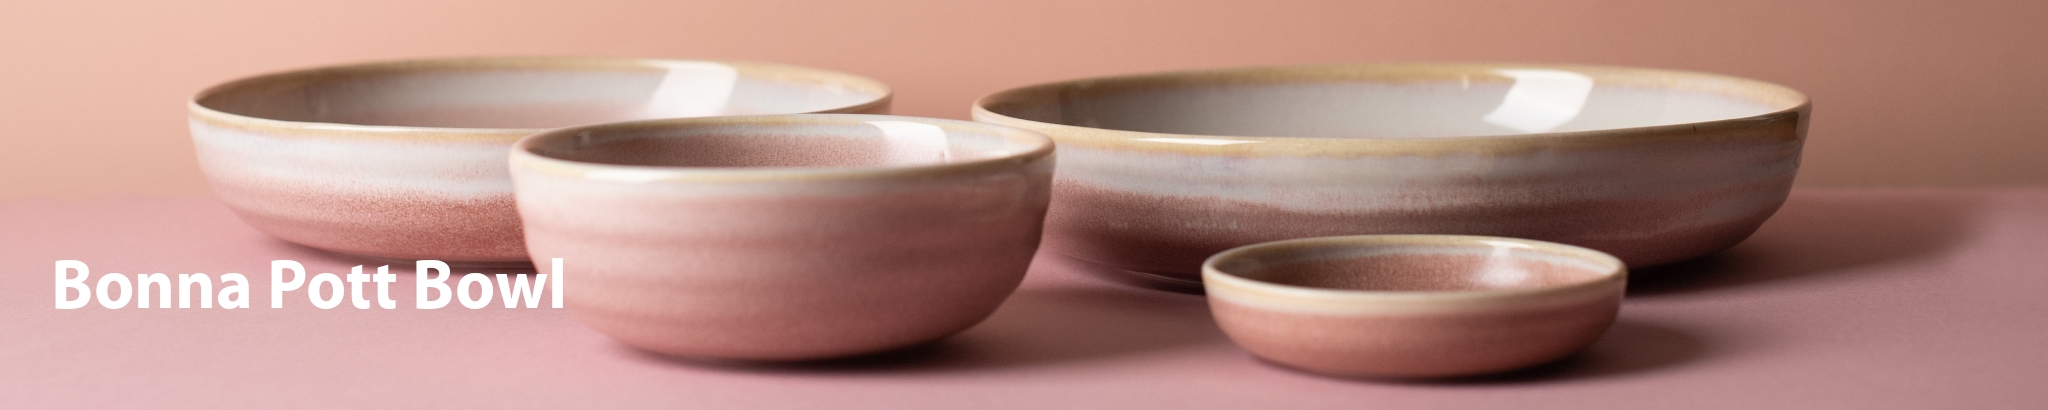 Bonna Premium Porcelain: Pott Bowl